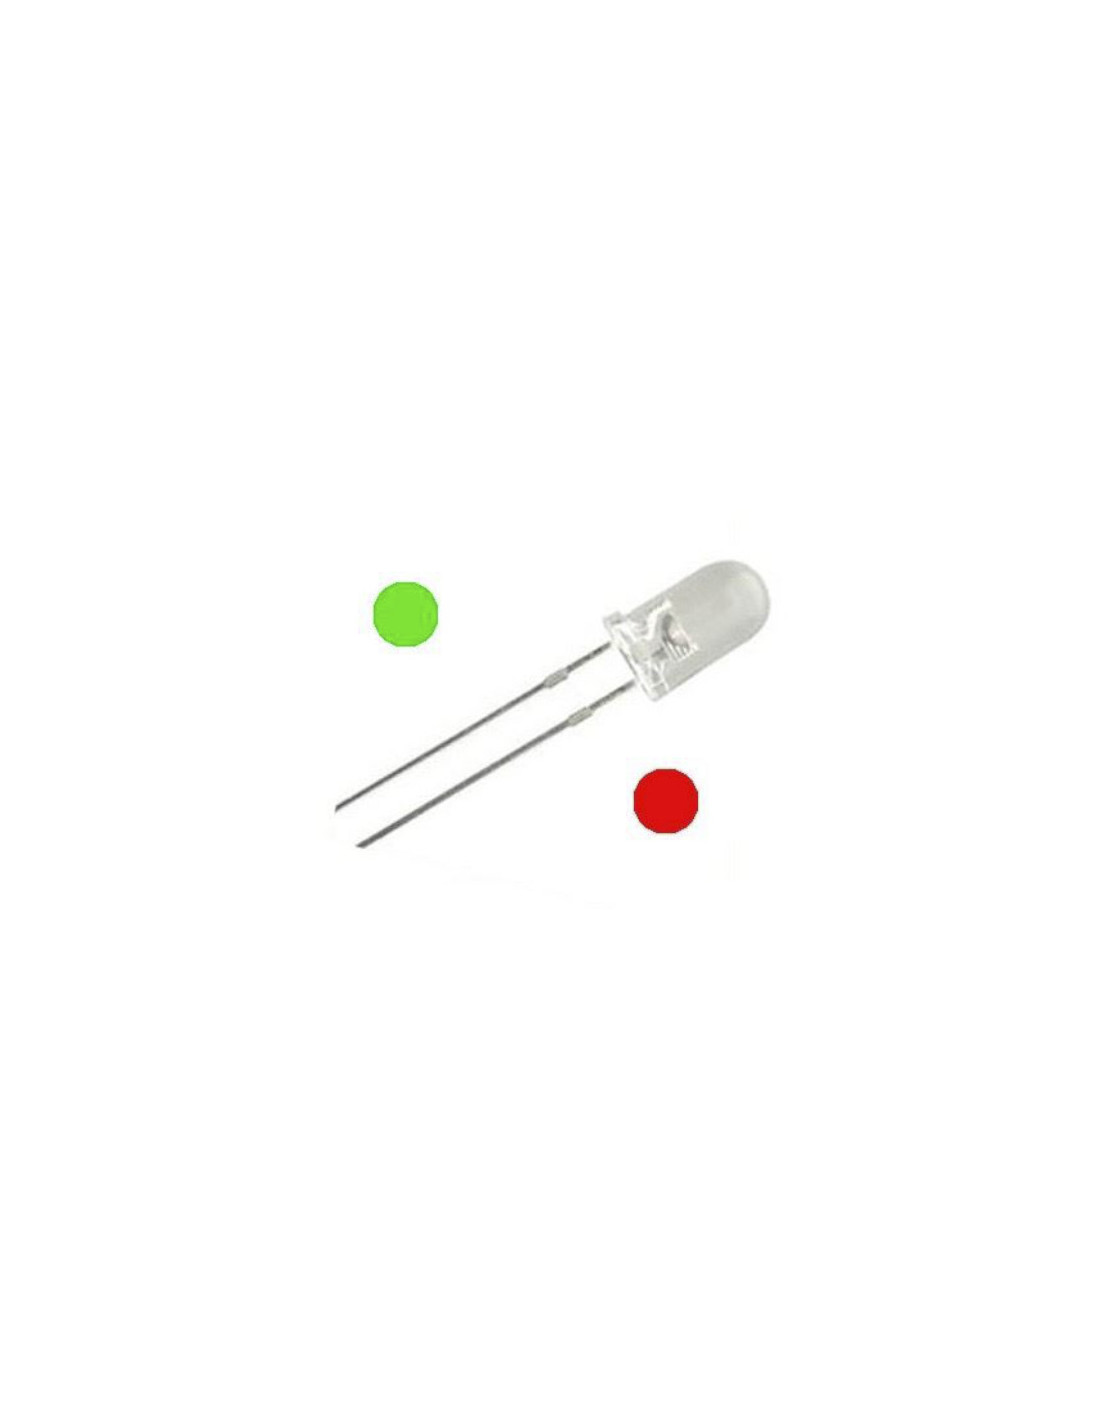 Diodo LED Bicolor 3mm, Rojo-Verde (10uds)